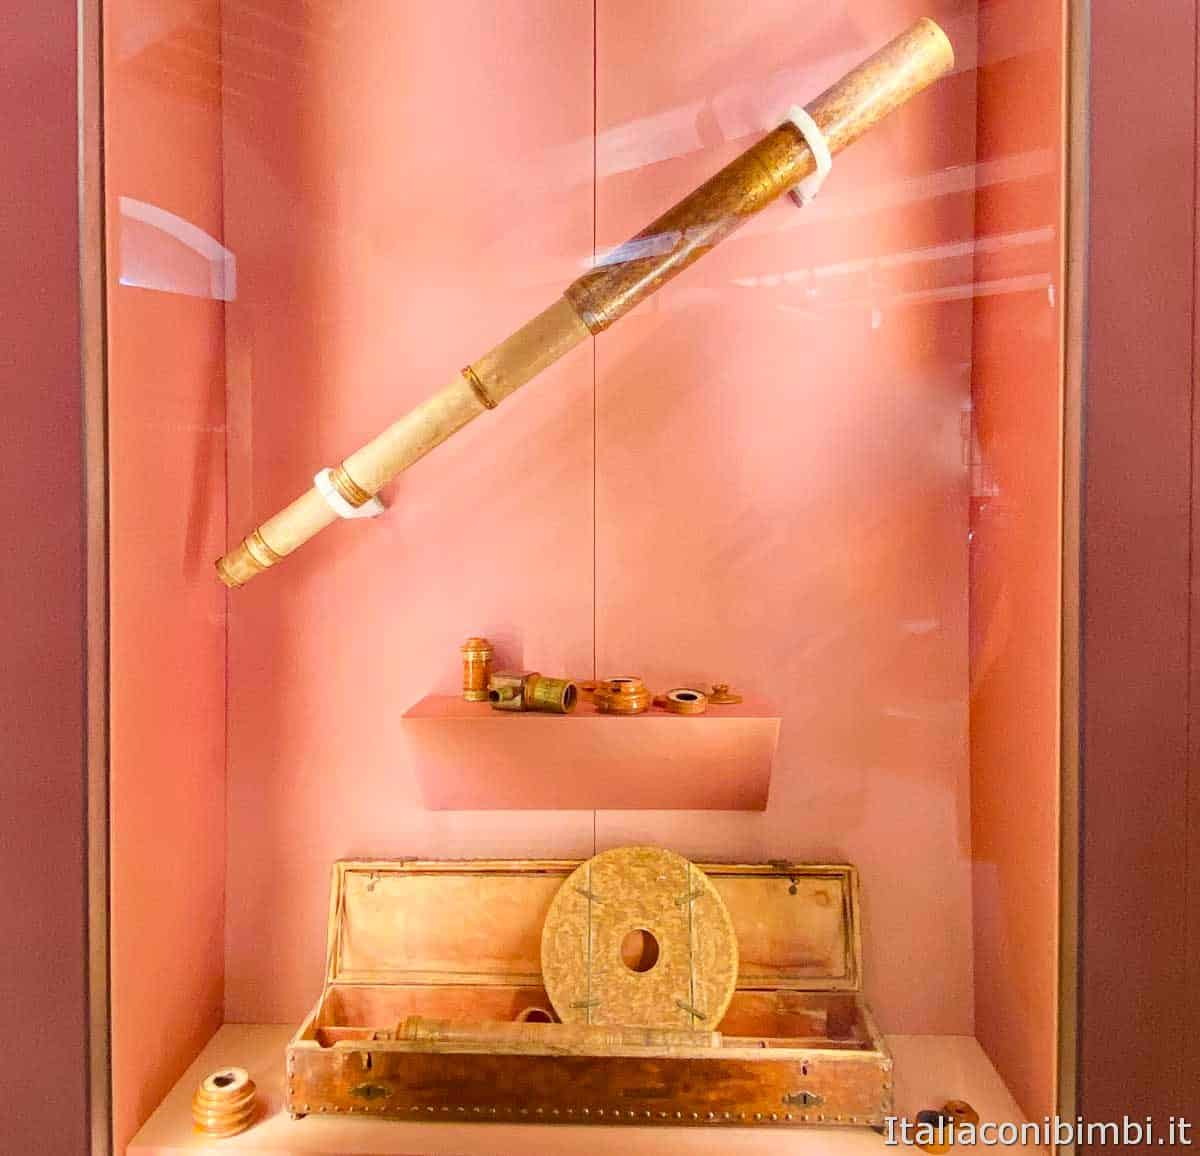 Museo Galileo di Firenze - cannocchiale